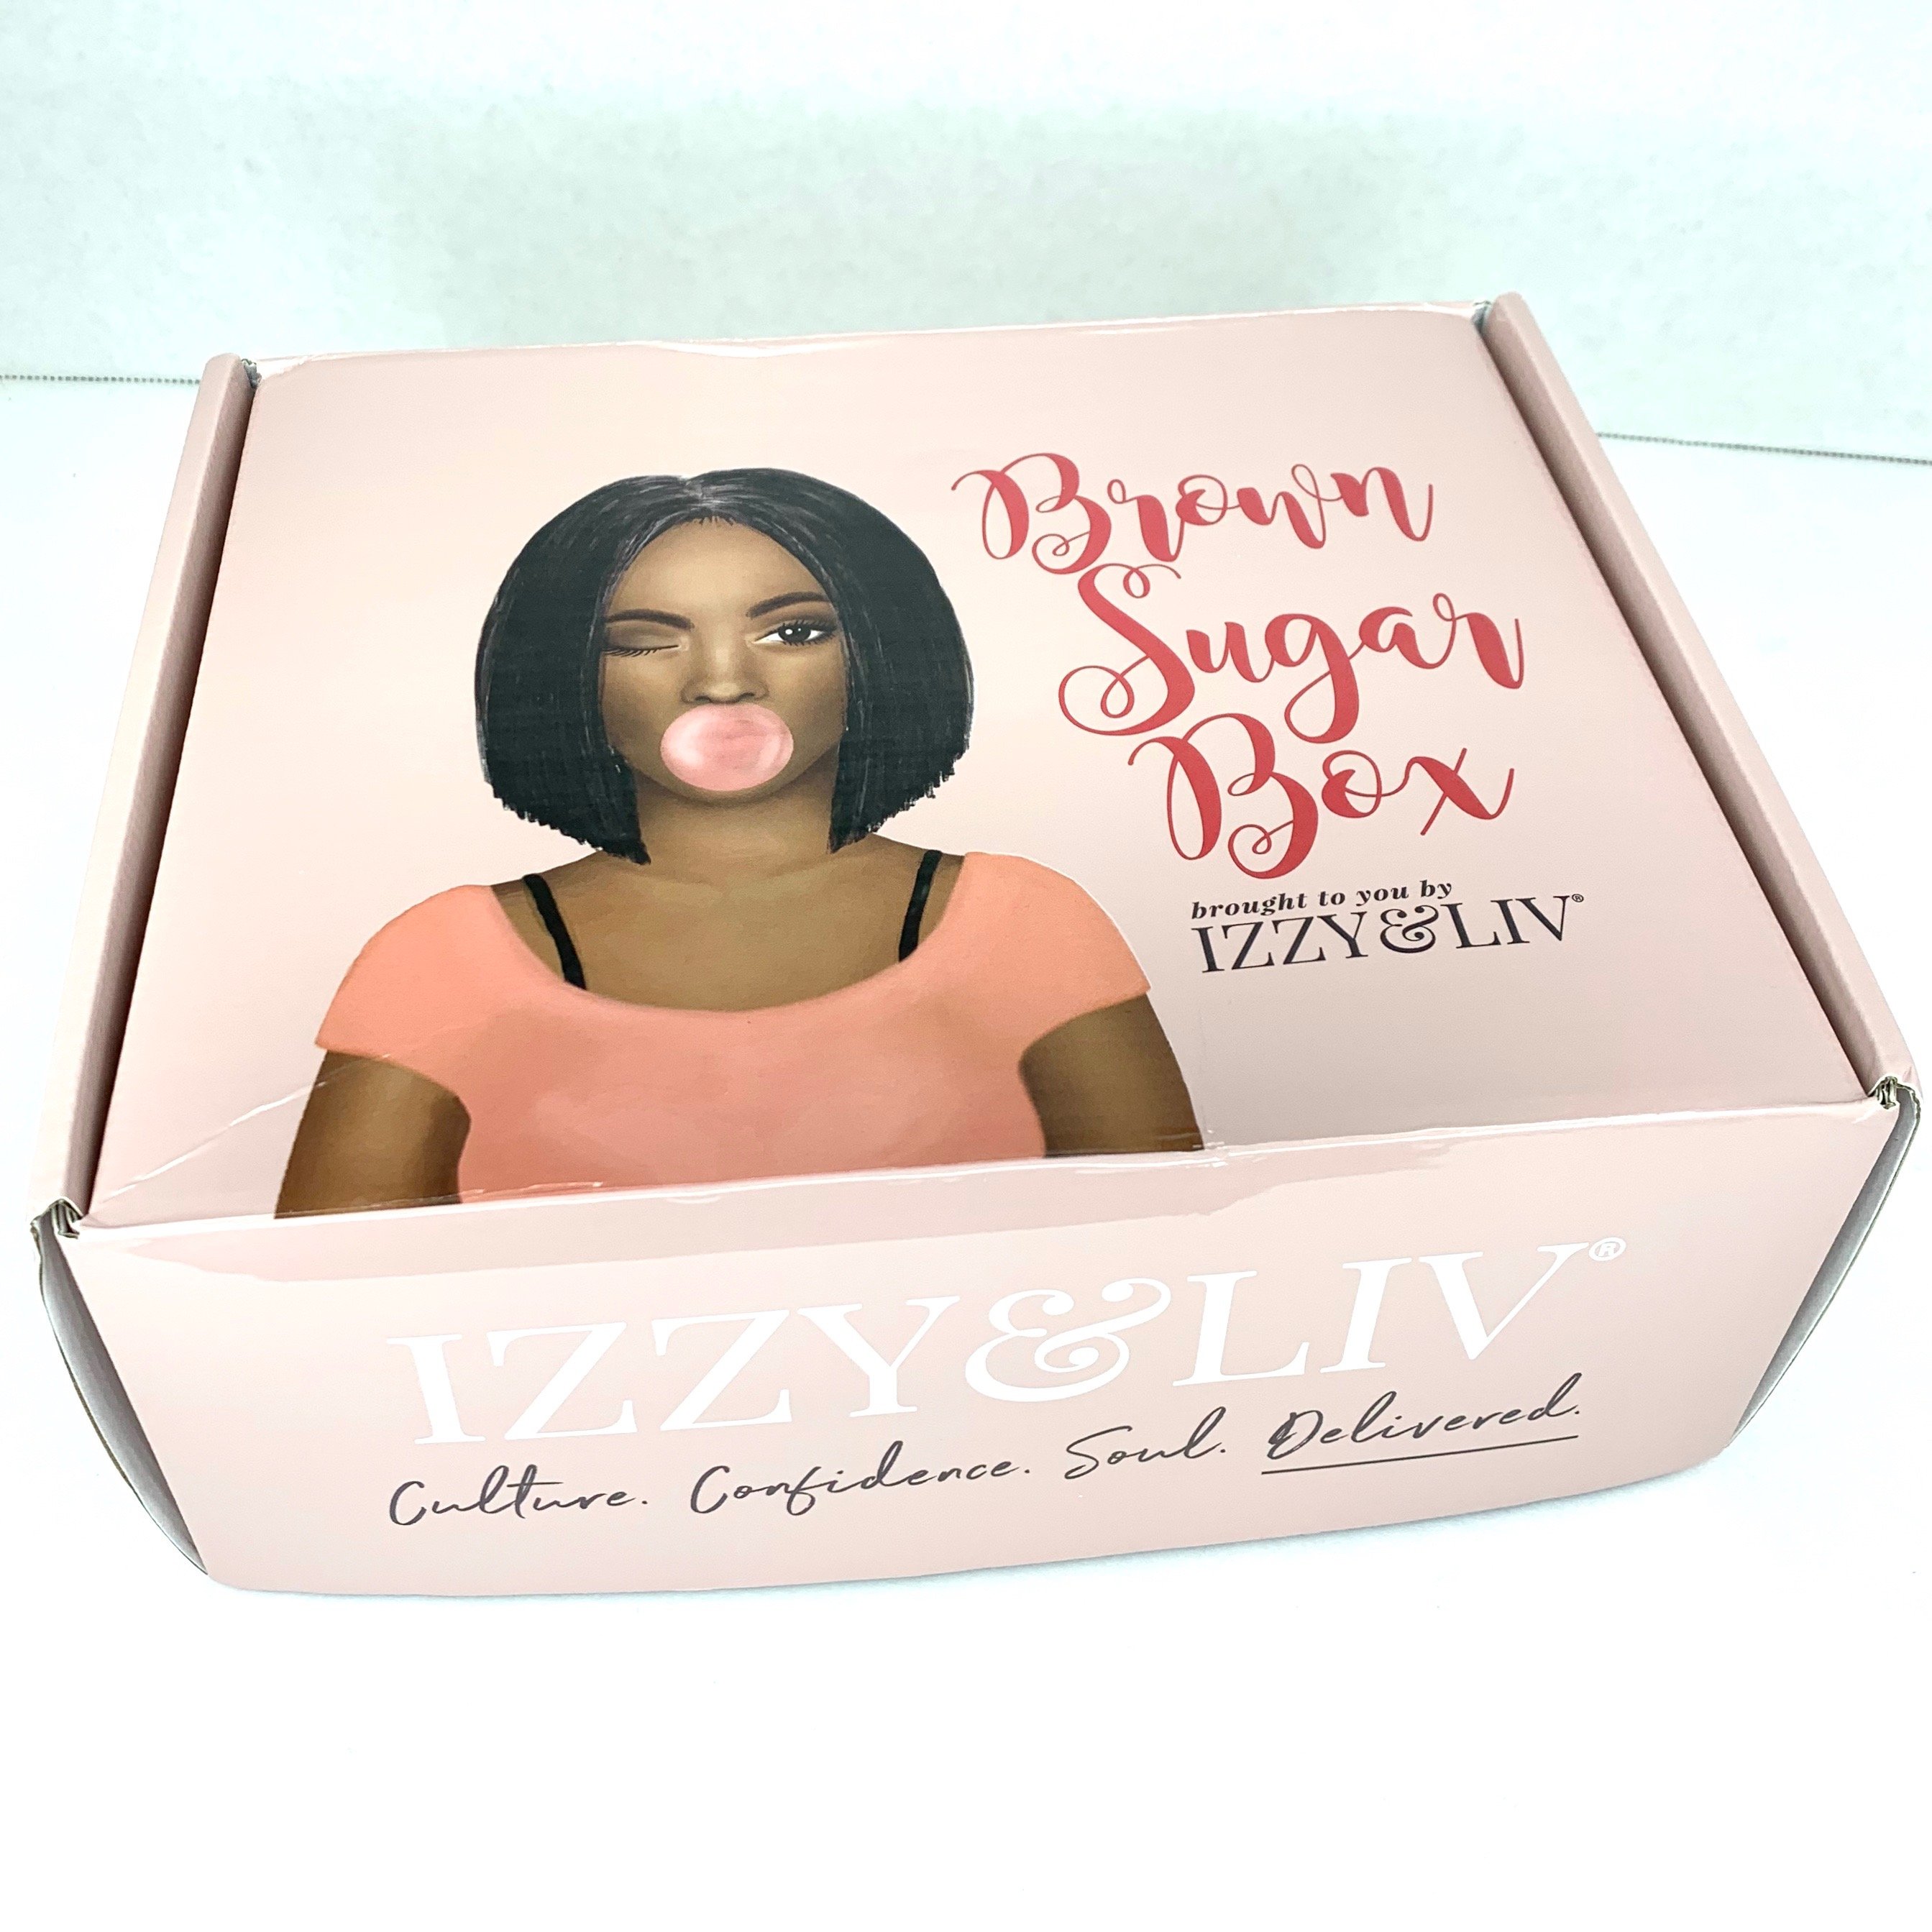 Box for Brown Sugar Box May 2020